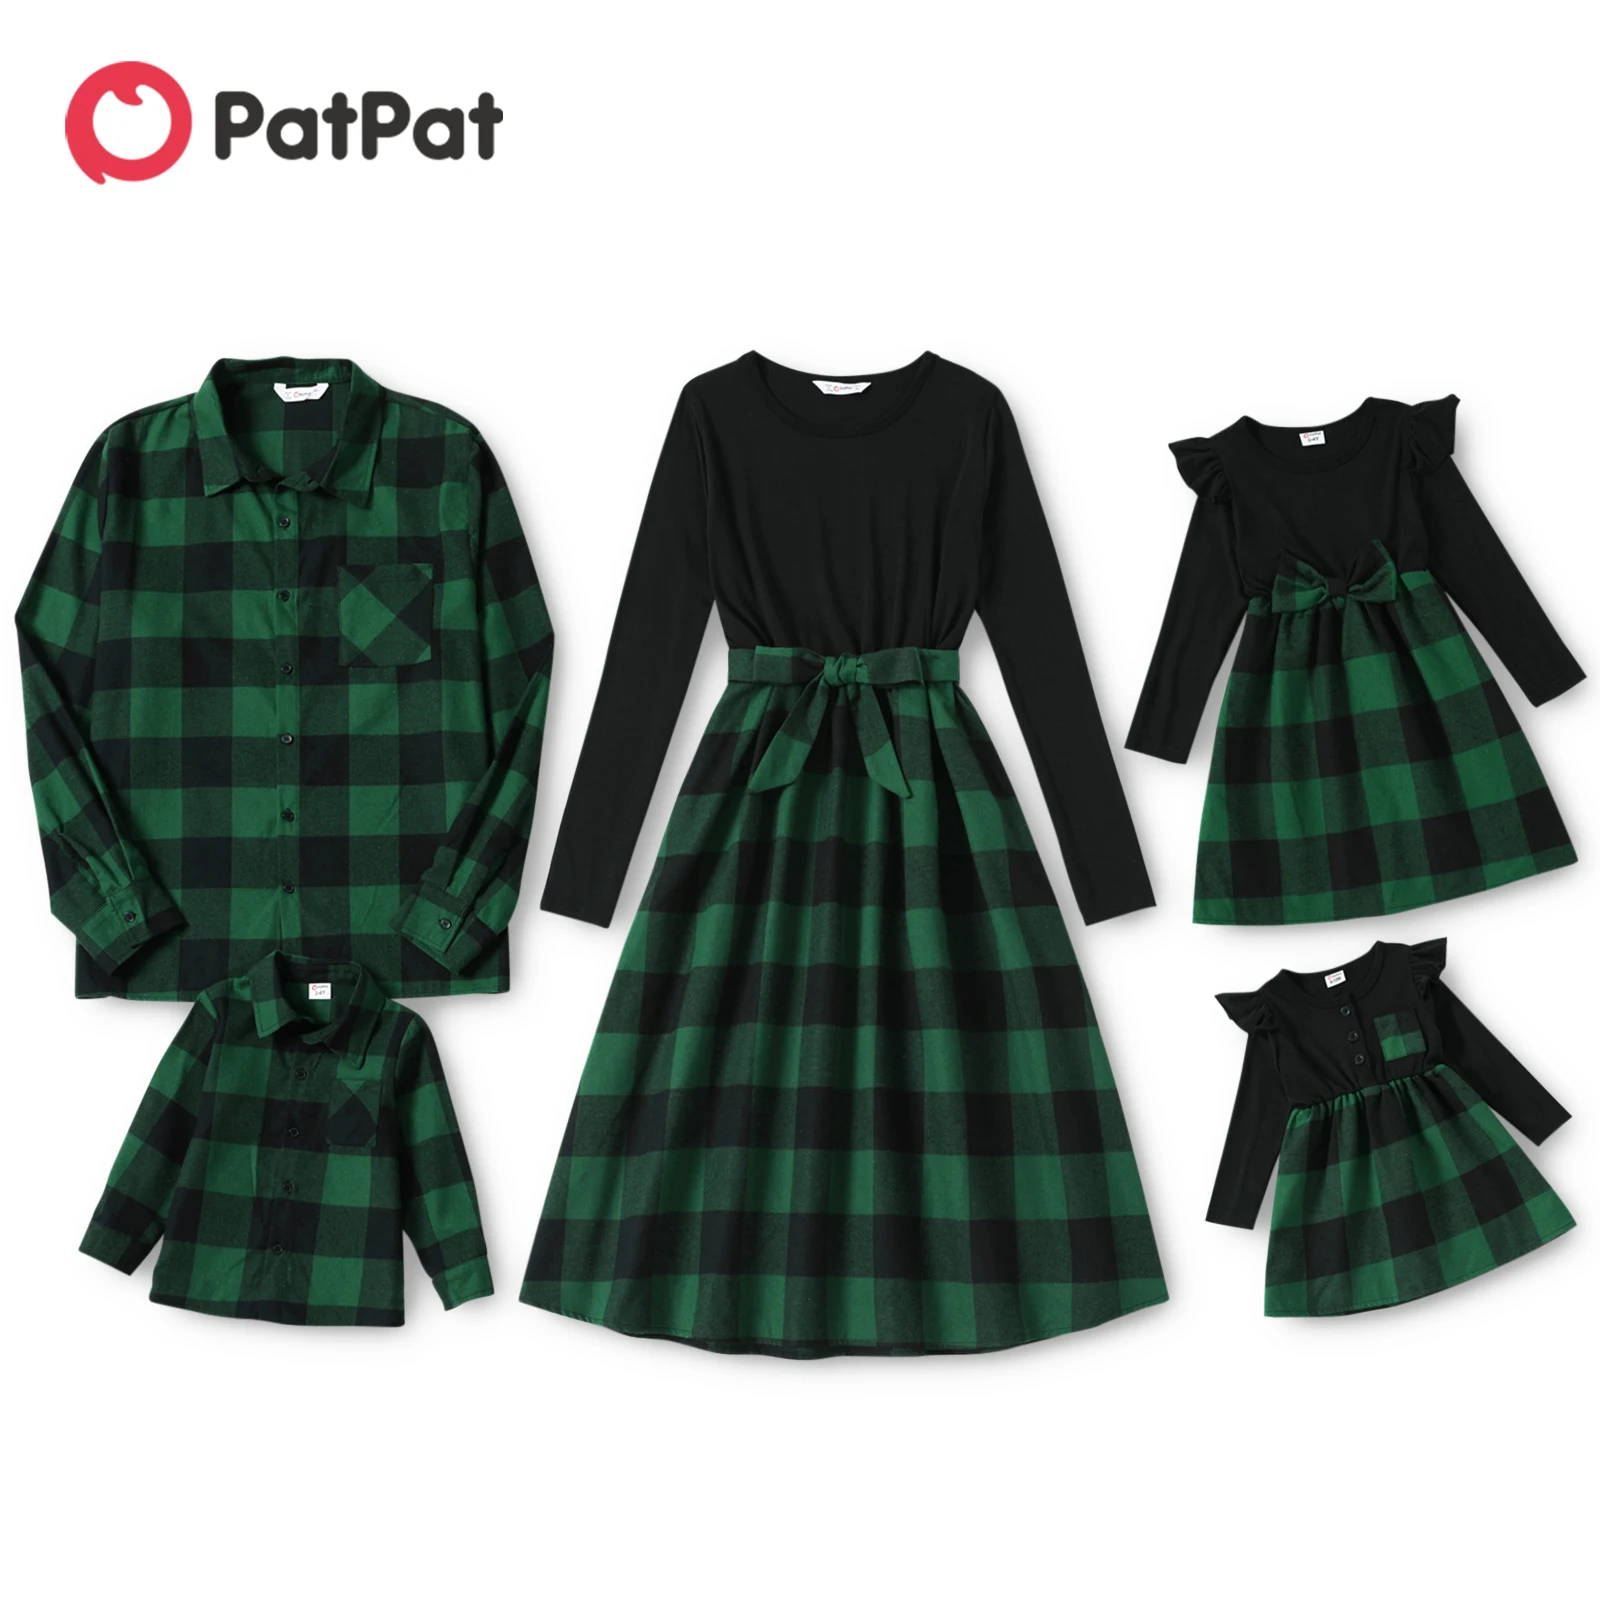 PatPat/ одинаковые комплекты для семьи, клетчатые платья миди с длинными рукавами и поясом, комплекты рубашек для семейной пары